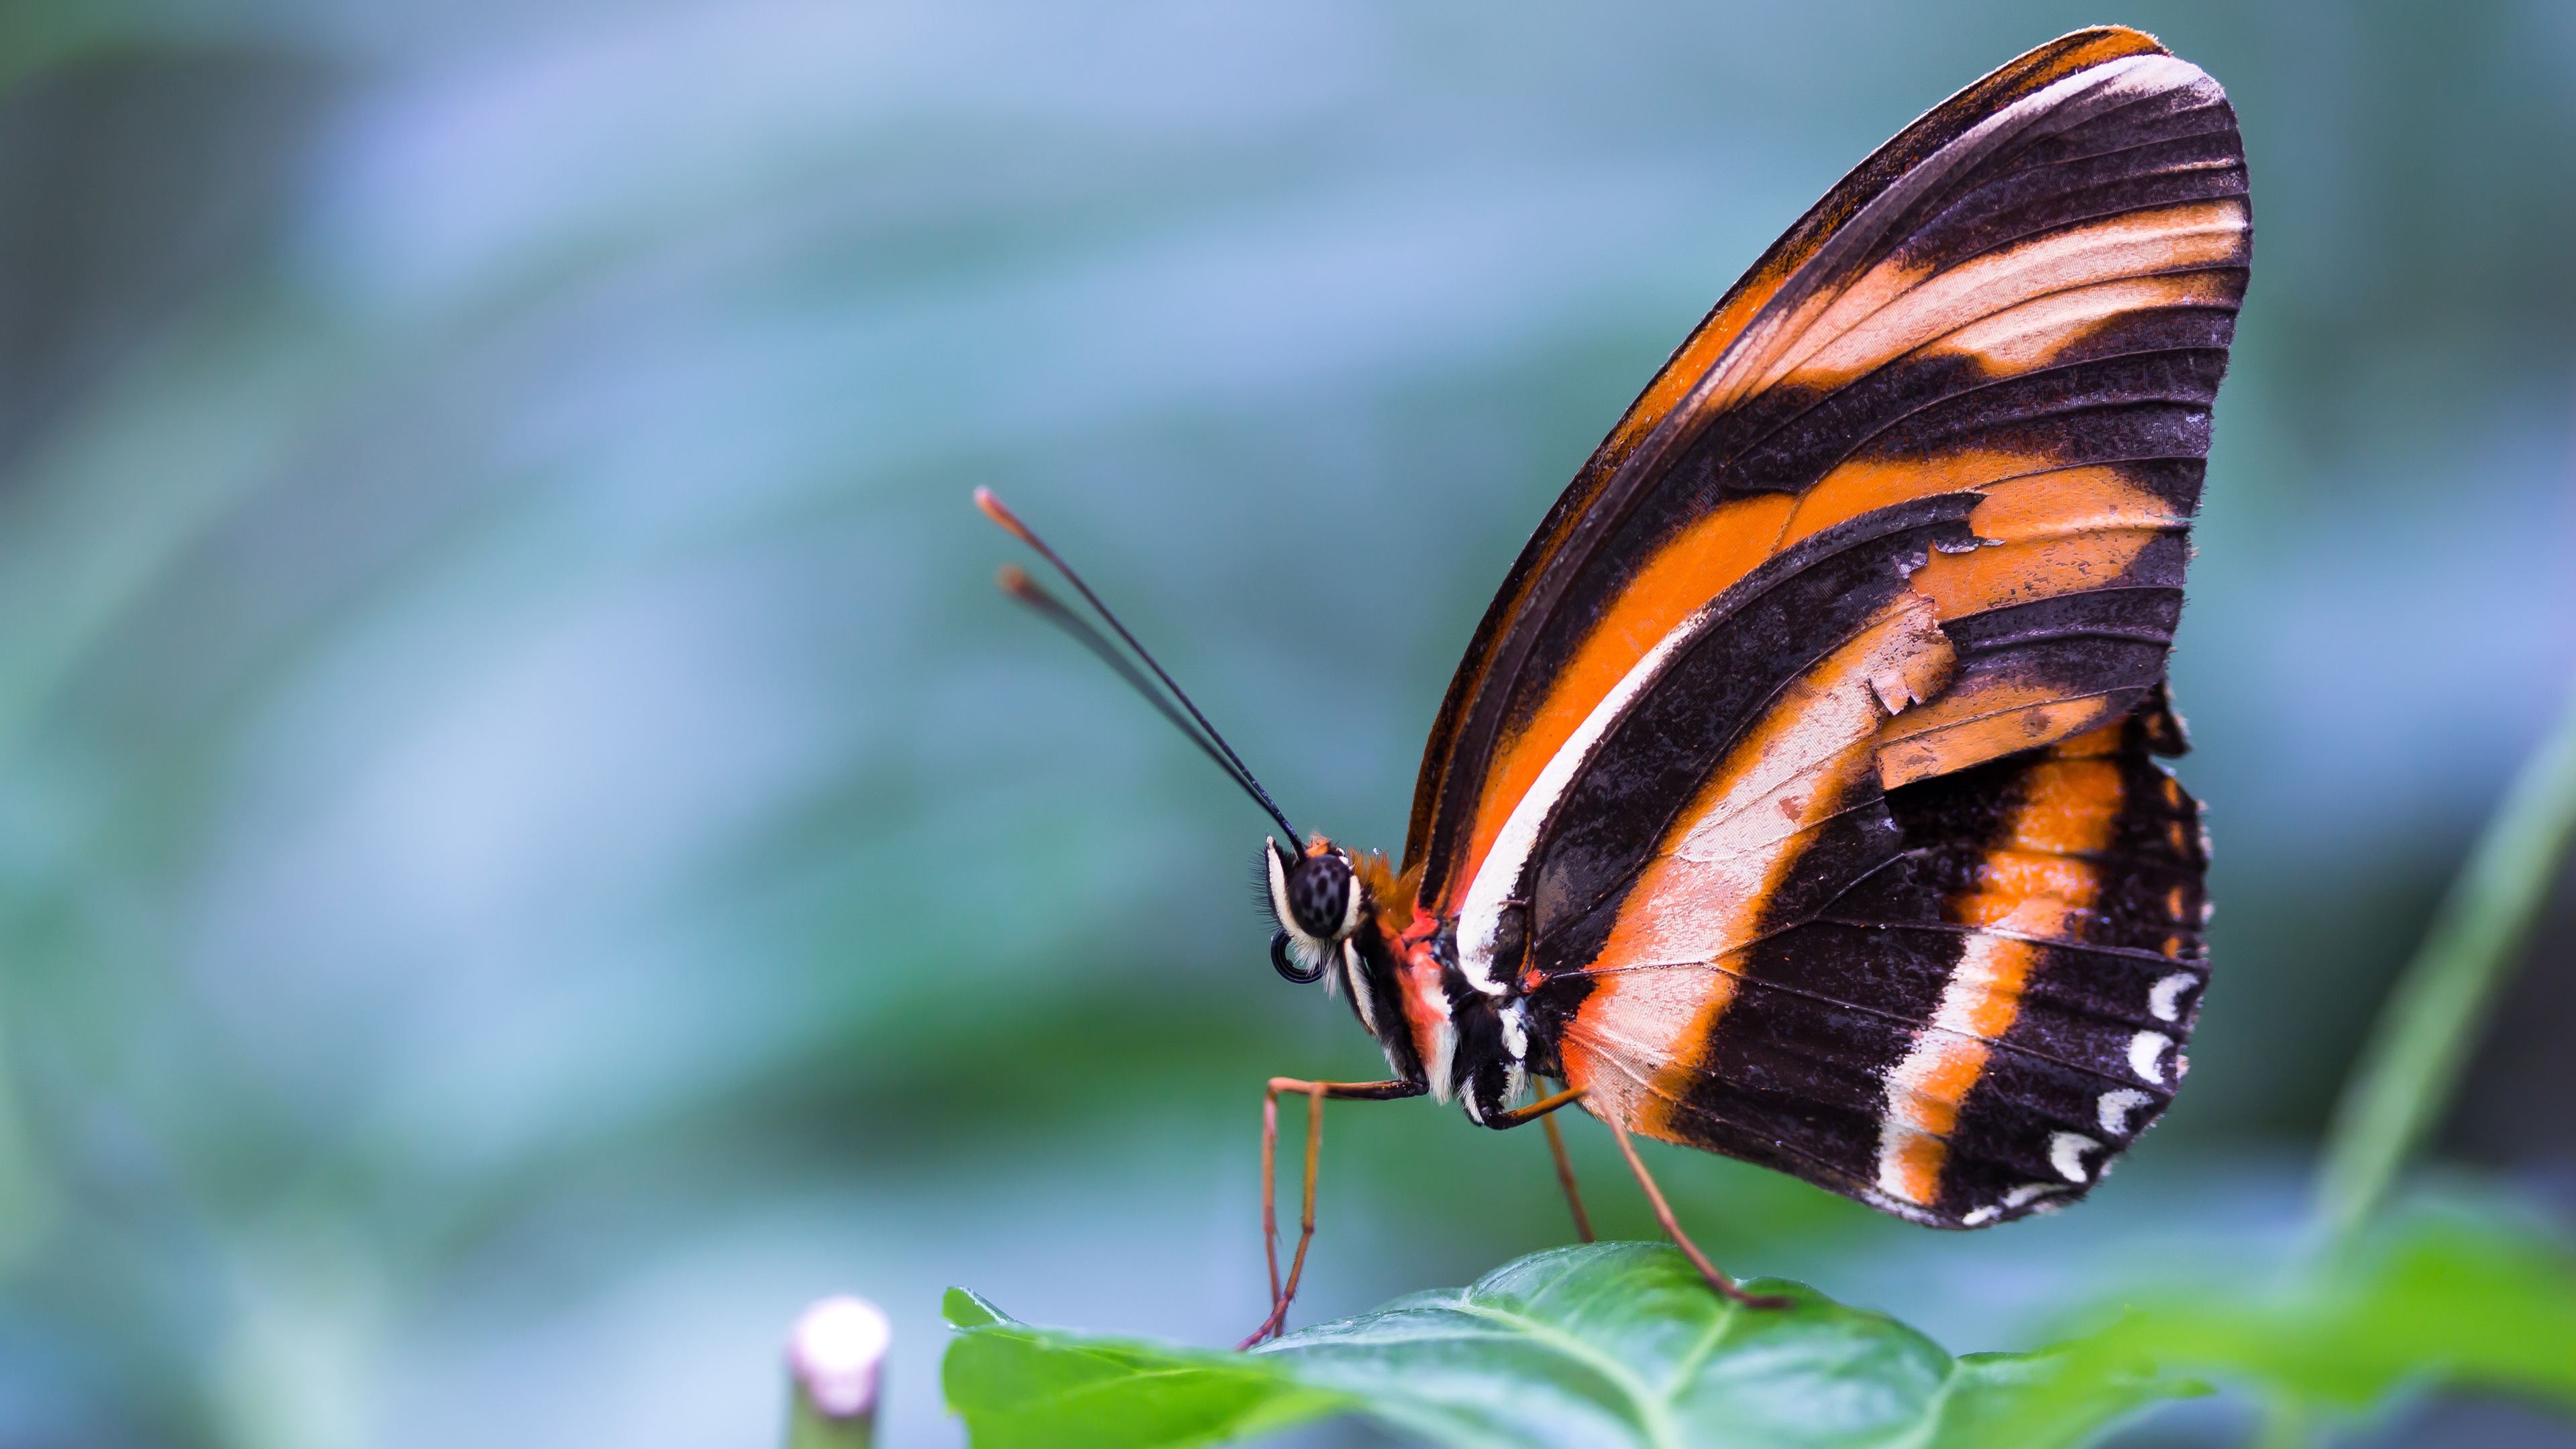 Бабочка на букву п. Парусник Марцелл бабочка. Зебровая бабочка-парусник. БУЛАВОУСЫЕ чешуекрылые. Полосатая бабочка.